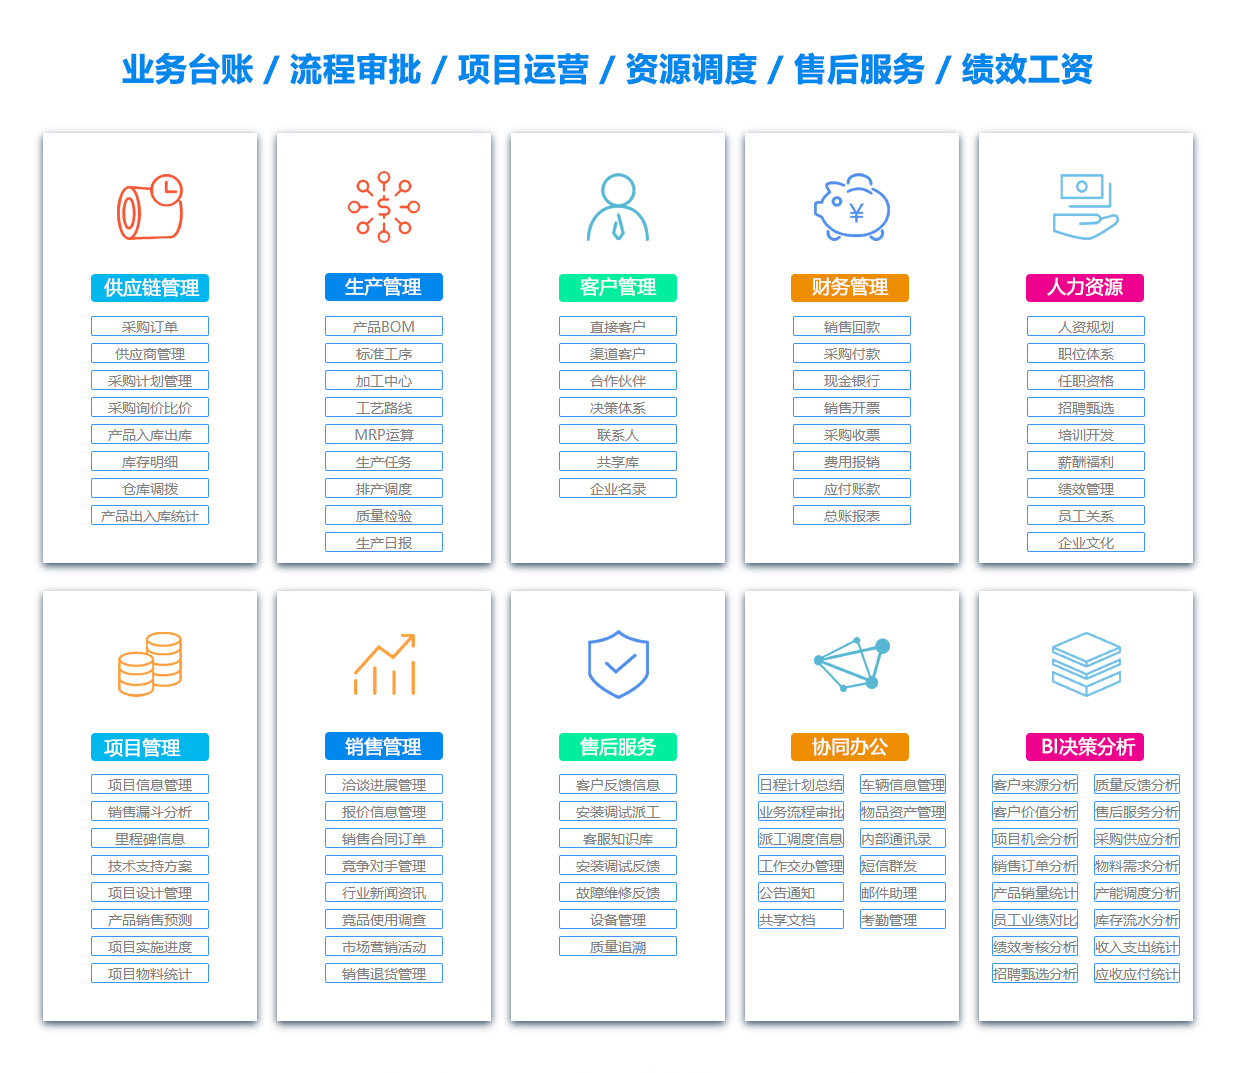 湘潭PDM:产品数据管理系统